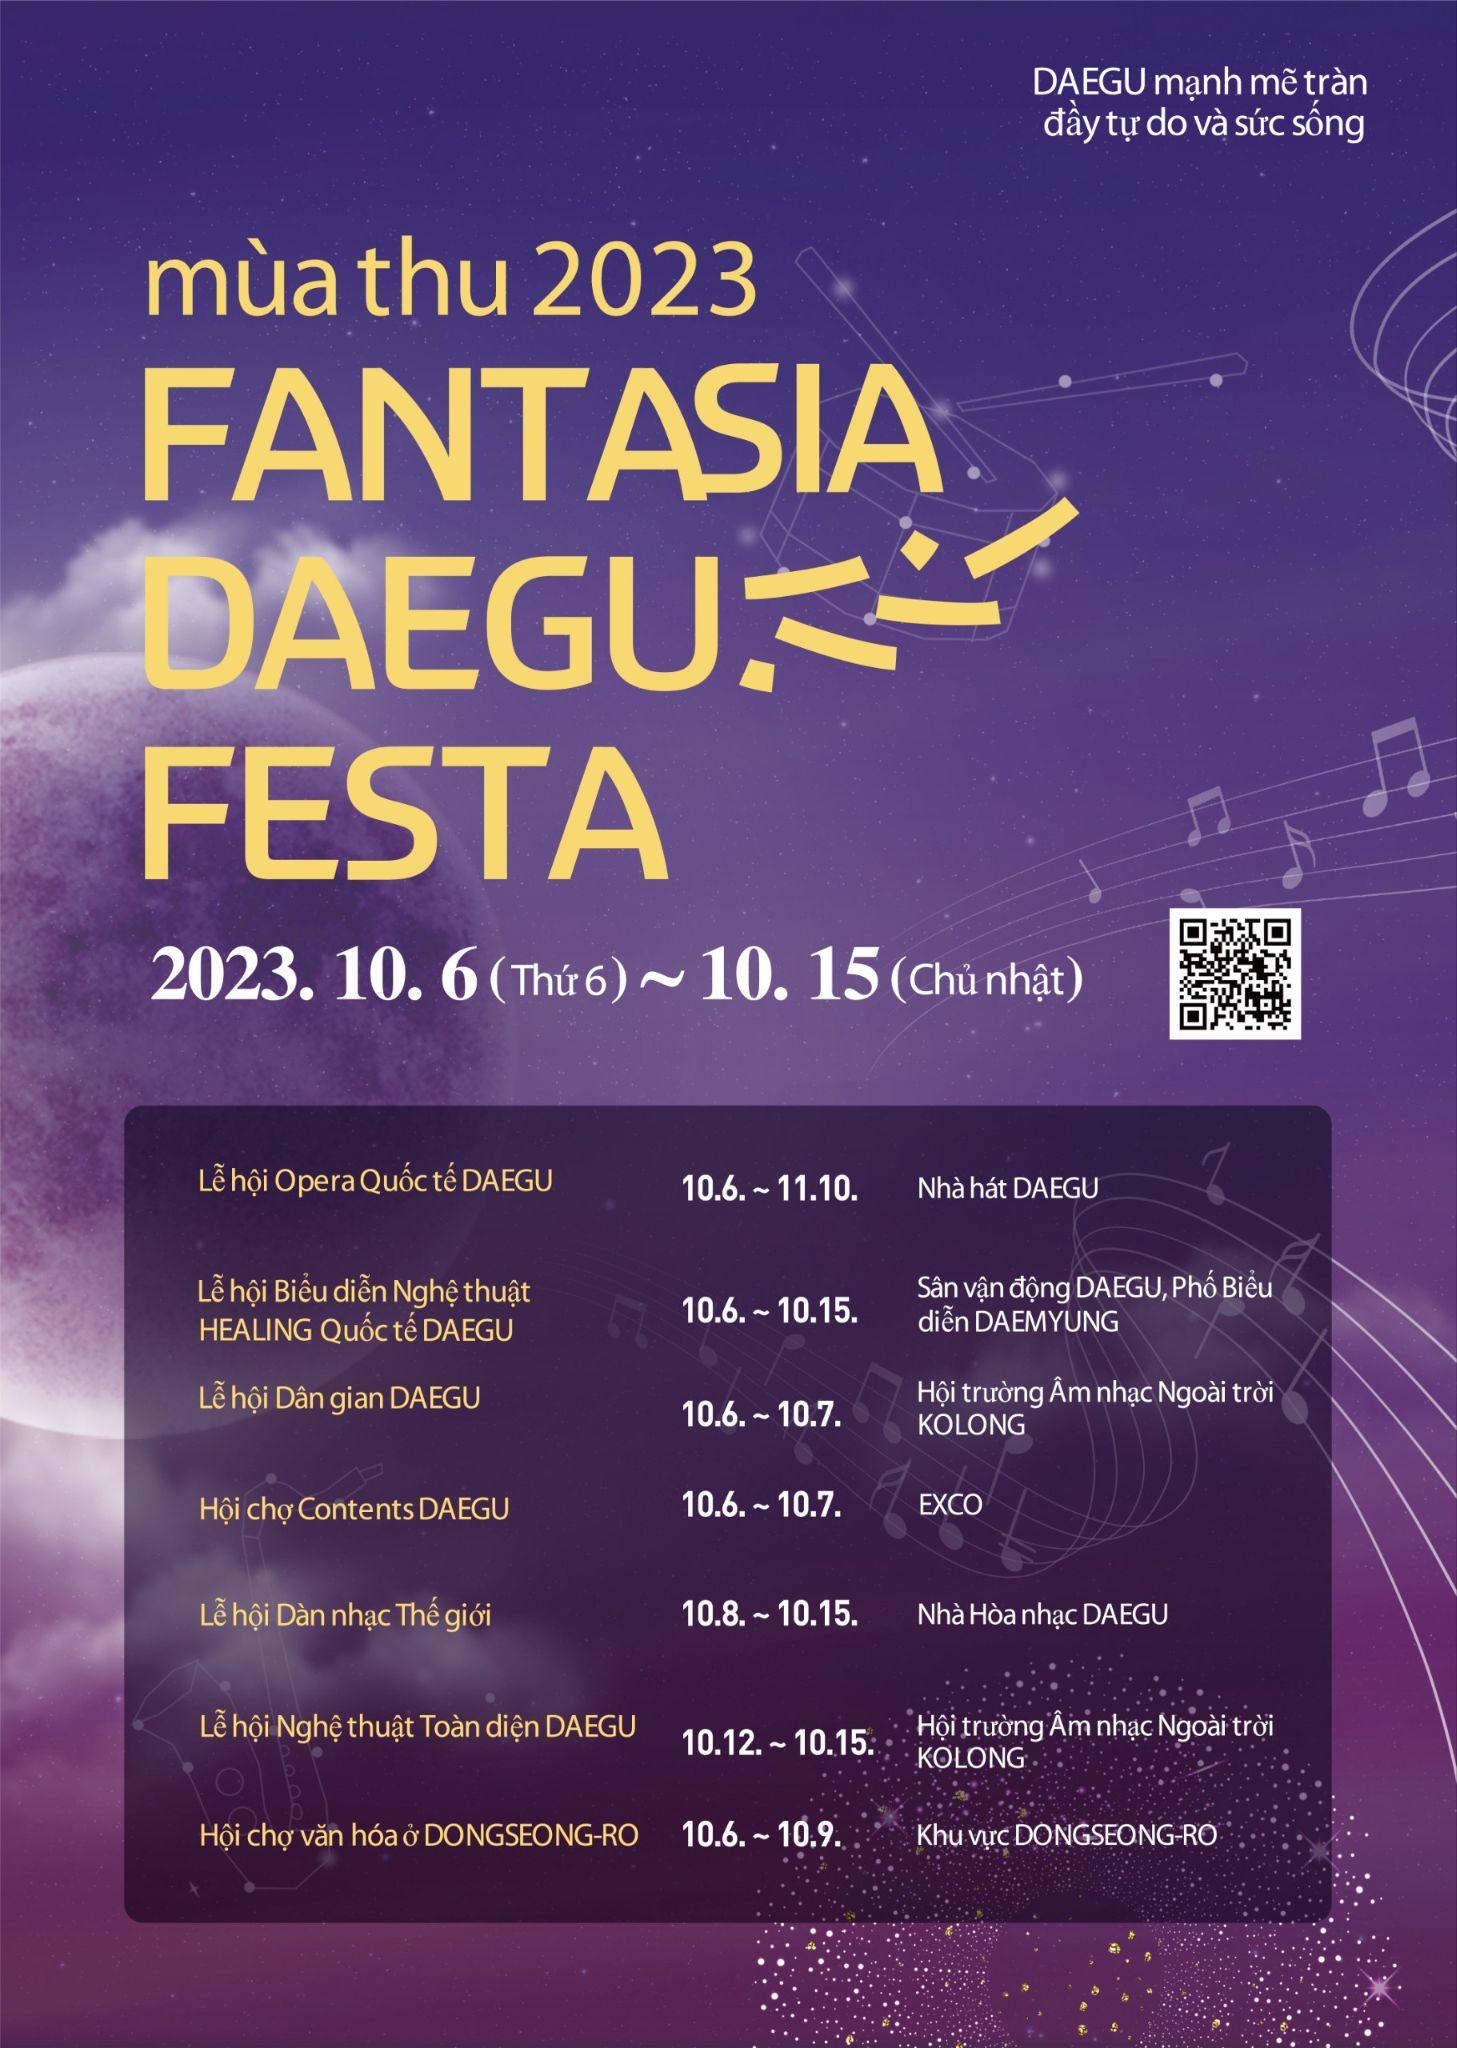 Lễ hội Fantasia Daegu Festa 2023, mê đắm vẻ đẹp đầy hấp dẫn của thành phố Daegu, Hàn Quốc - Ảnh 2.